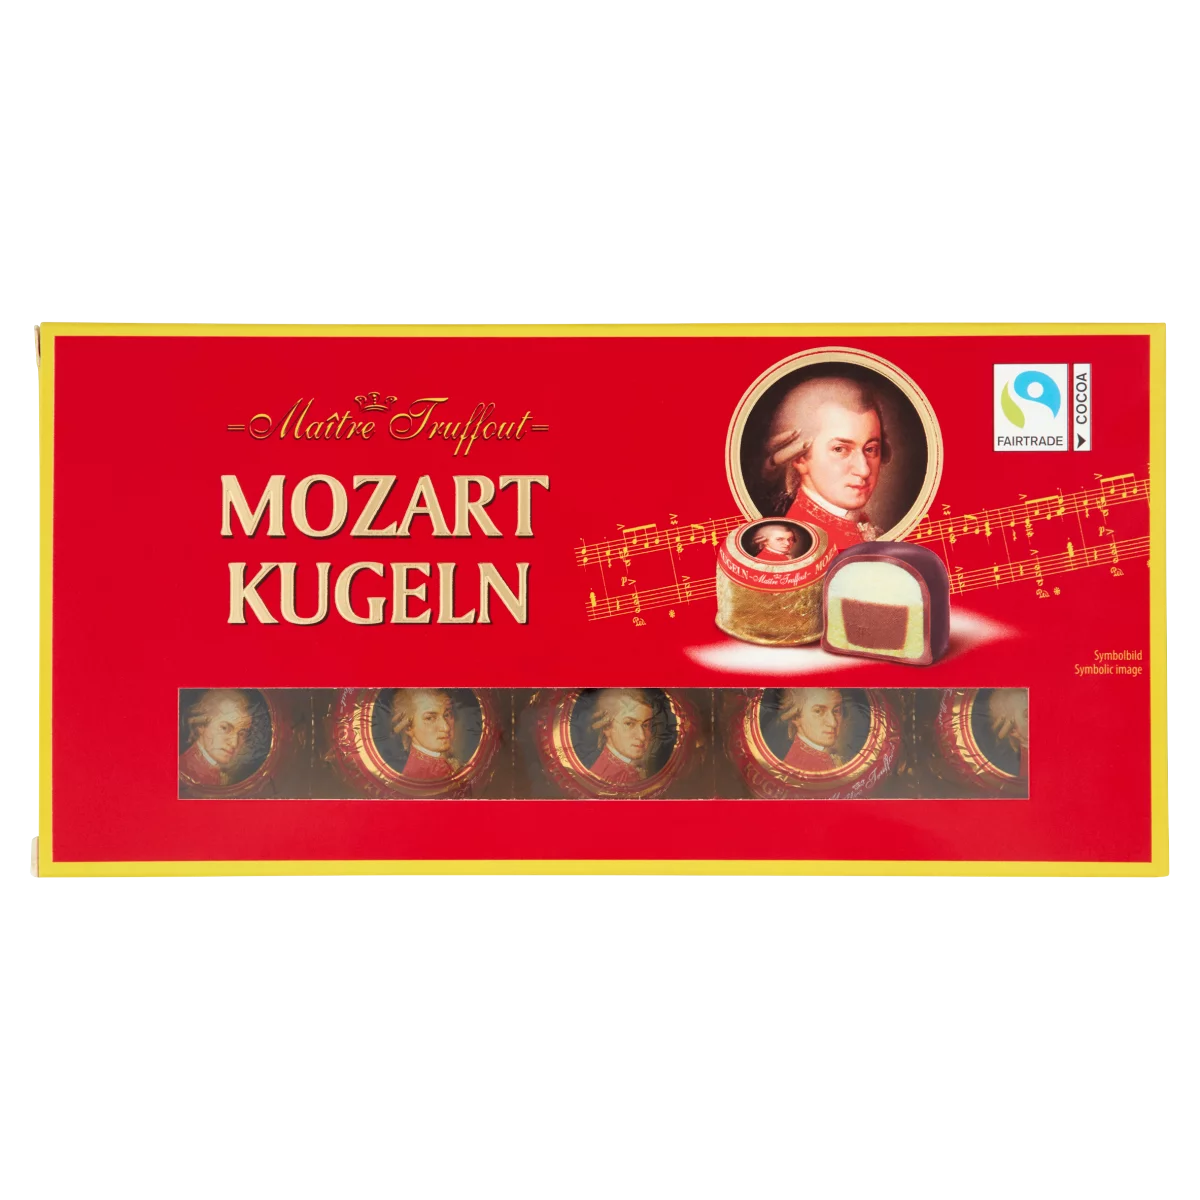 Mozart Kugeln praliné, pisztáciás marcipán, marcipán & mogyorós nugát csokoládés bevonattal 200 g